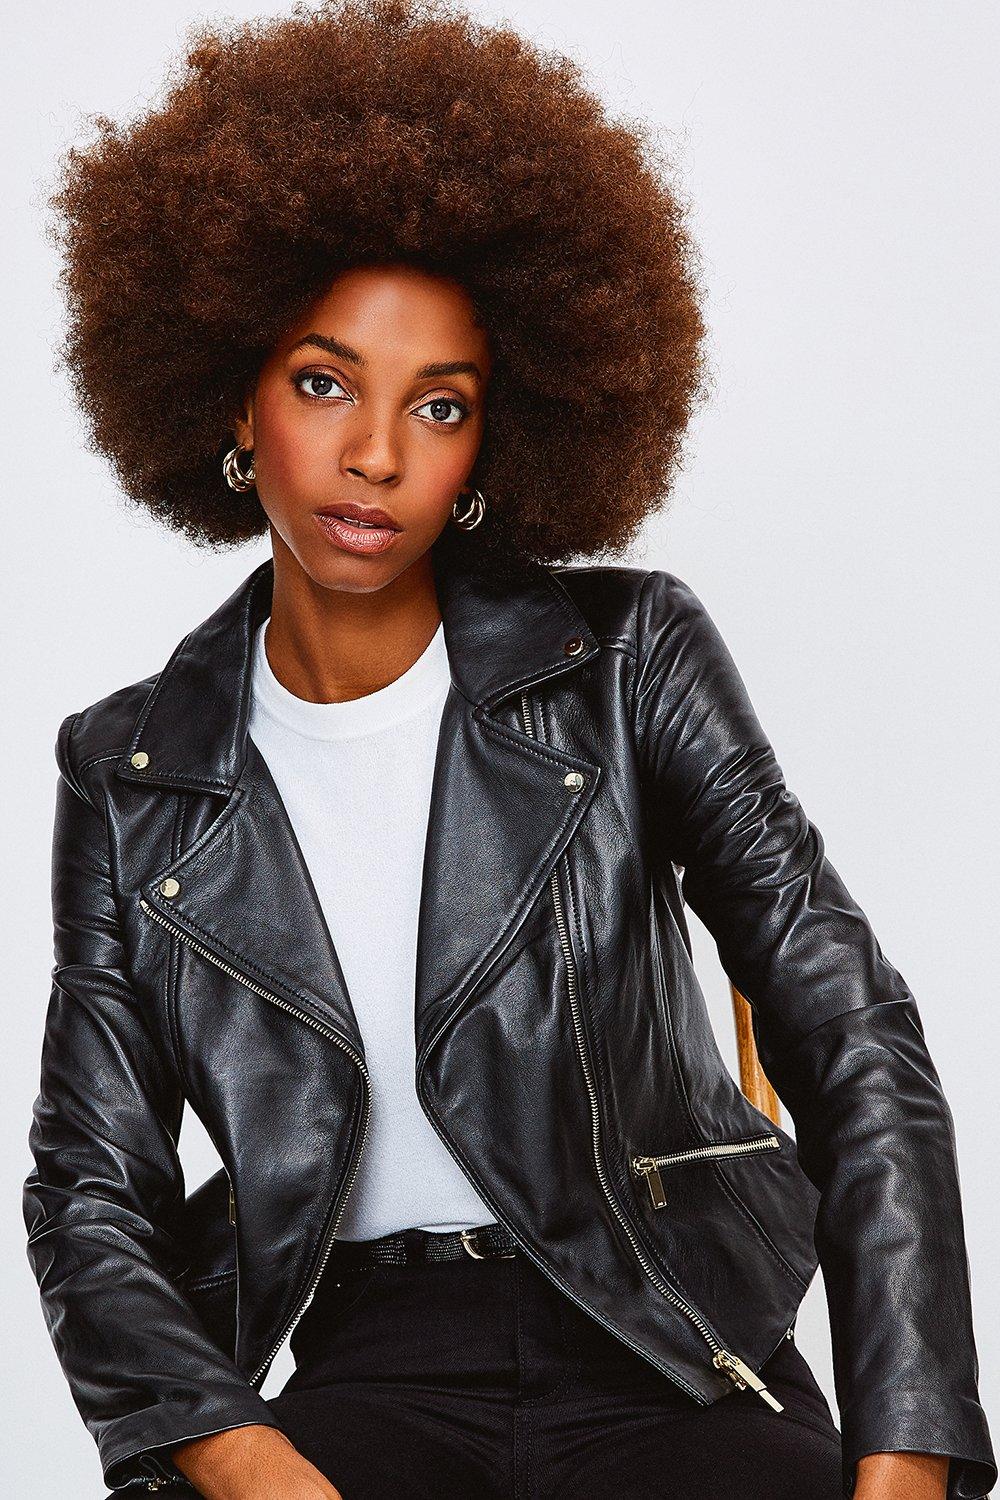 Karen Millen Leather Jacket Top Sellers, 59% OFF | www ...